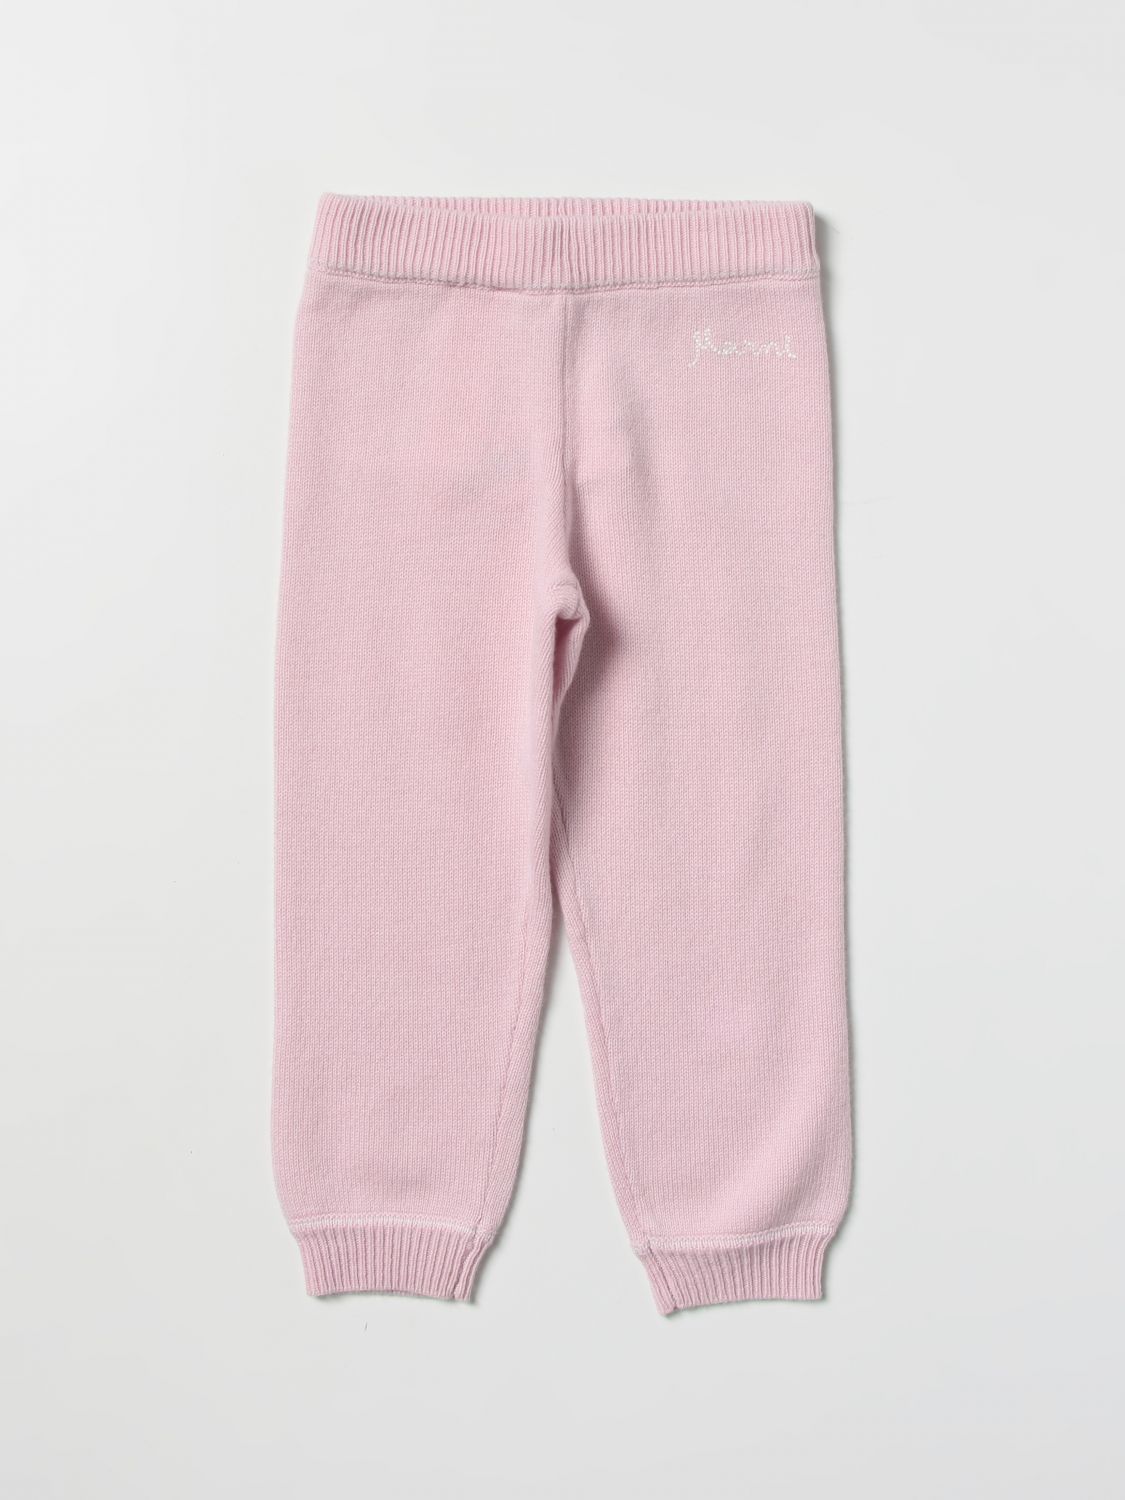 Pants Marni: Marni pants for baby pink 1